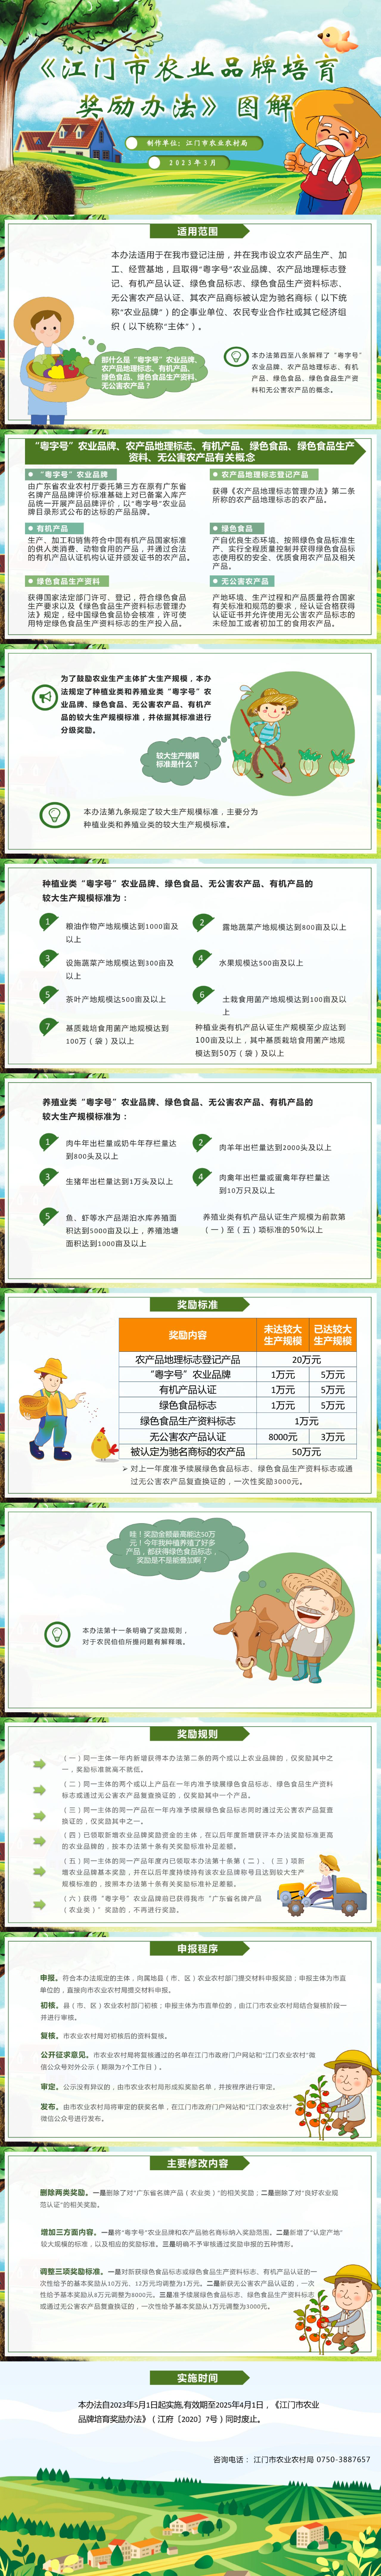 江门市农业品牌培育奖励办法政策解读（20230324）(1).jpg